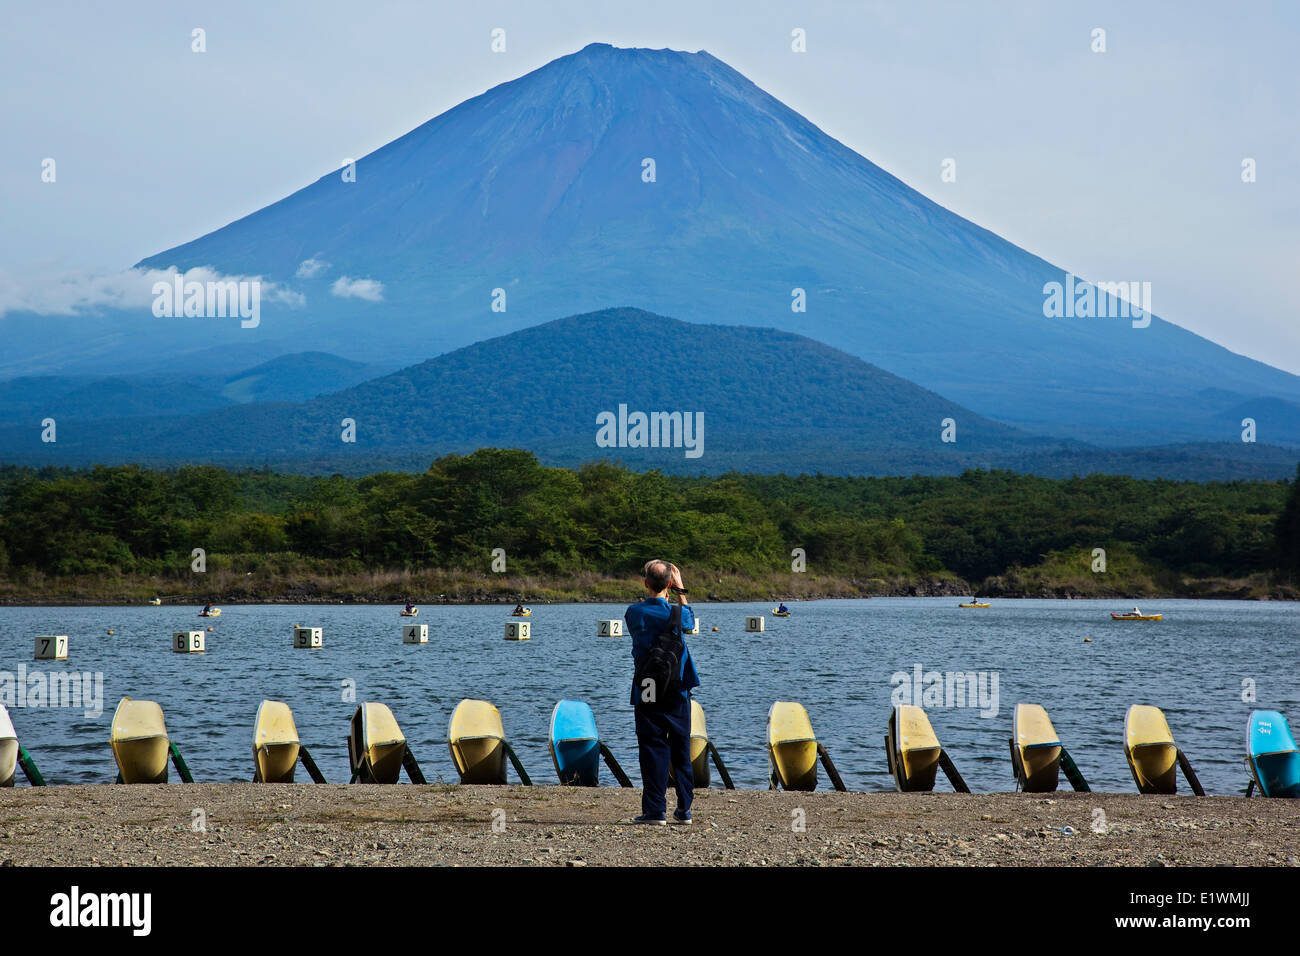 Le Mont Fuji vu depuis les rives du lac Shoji, le plus petit des cinq lacs du nord le long de la base du volcan. Und largement Banque D'Images